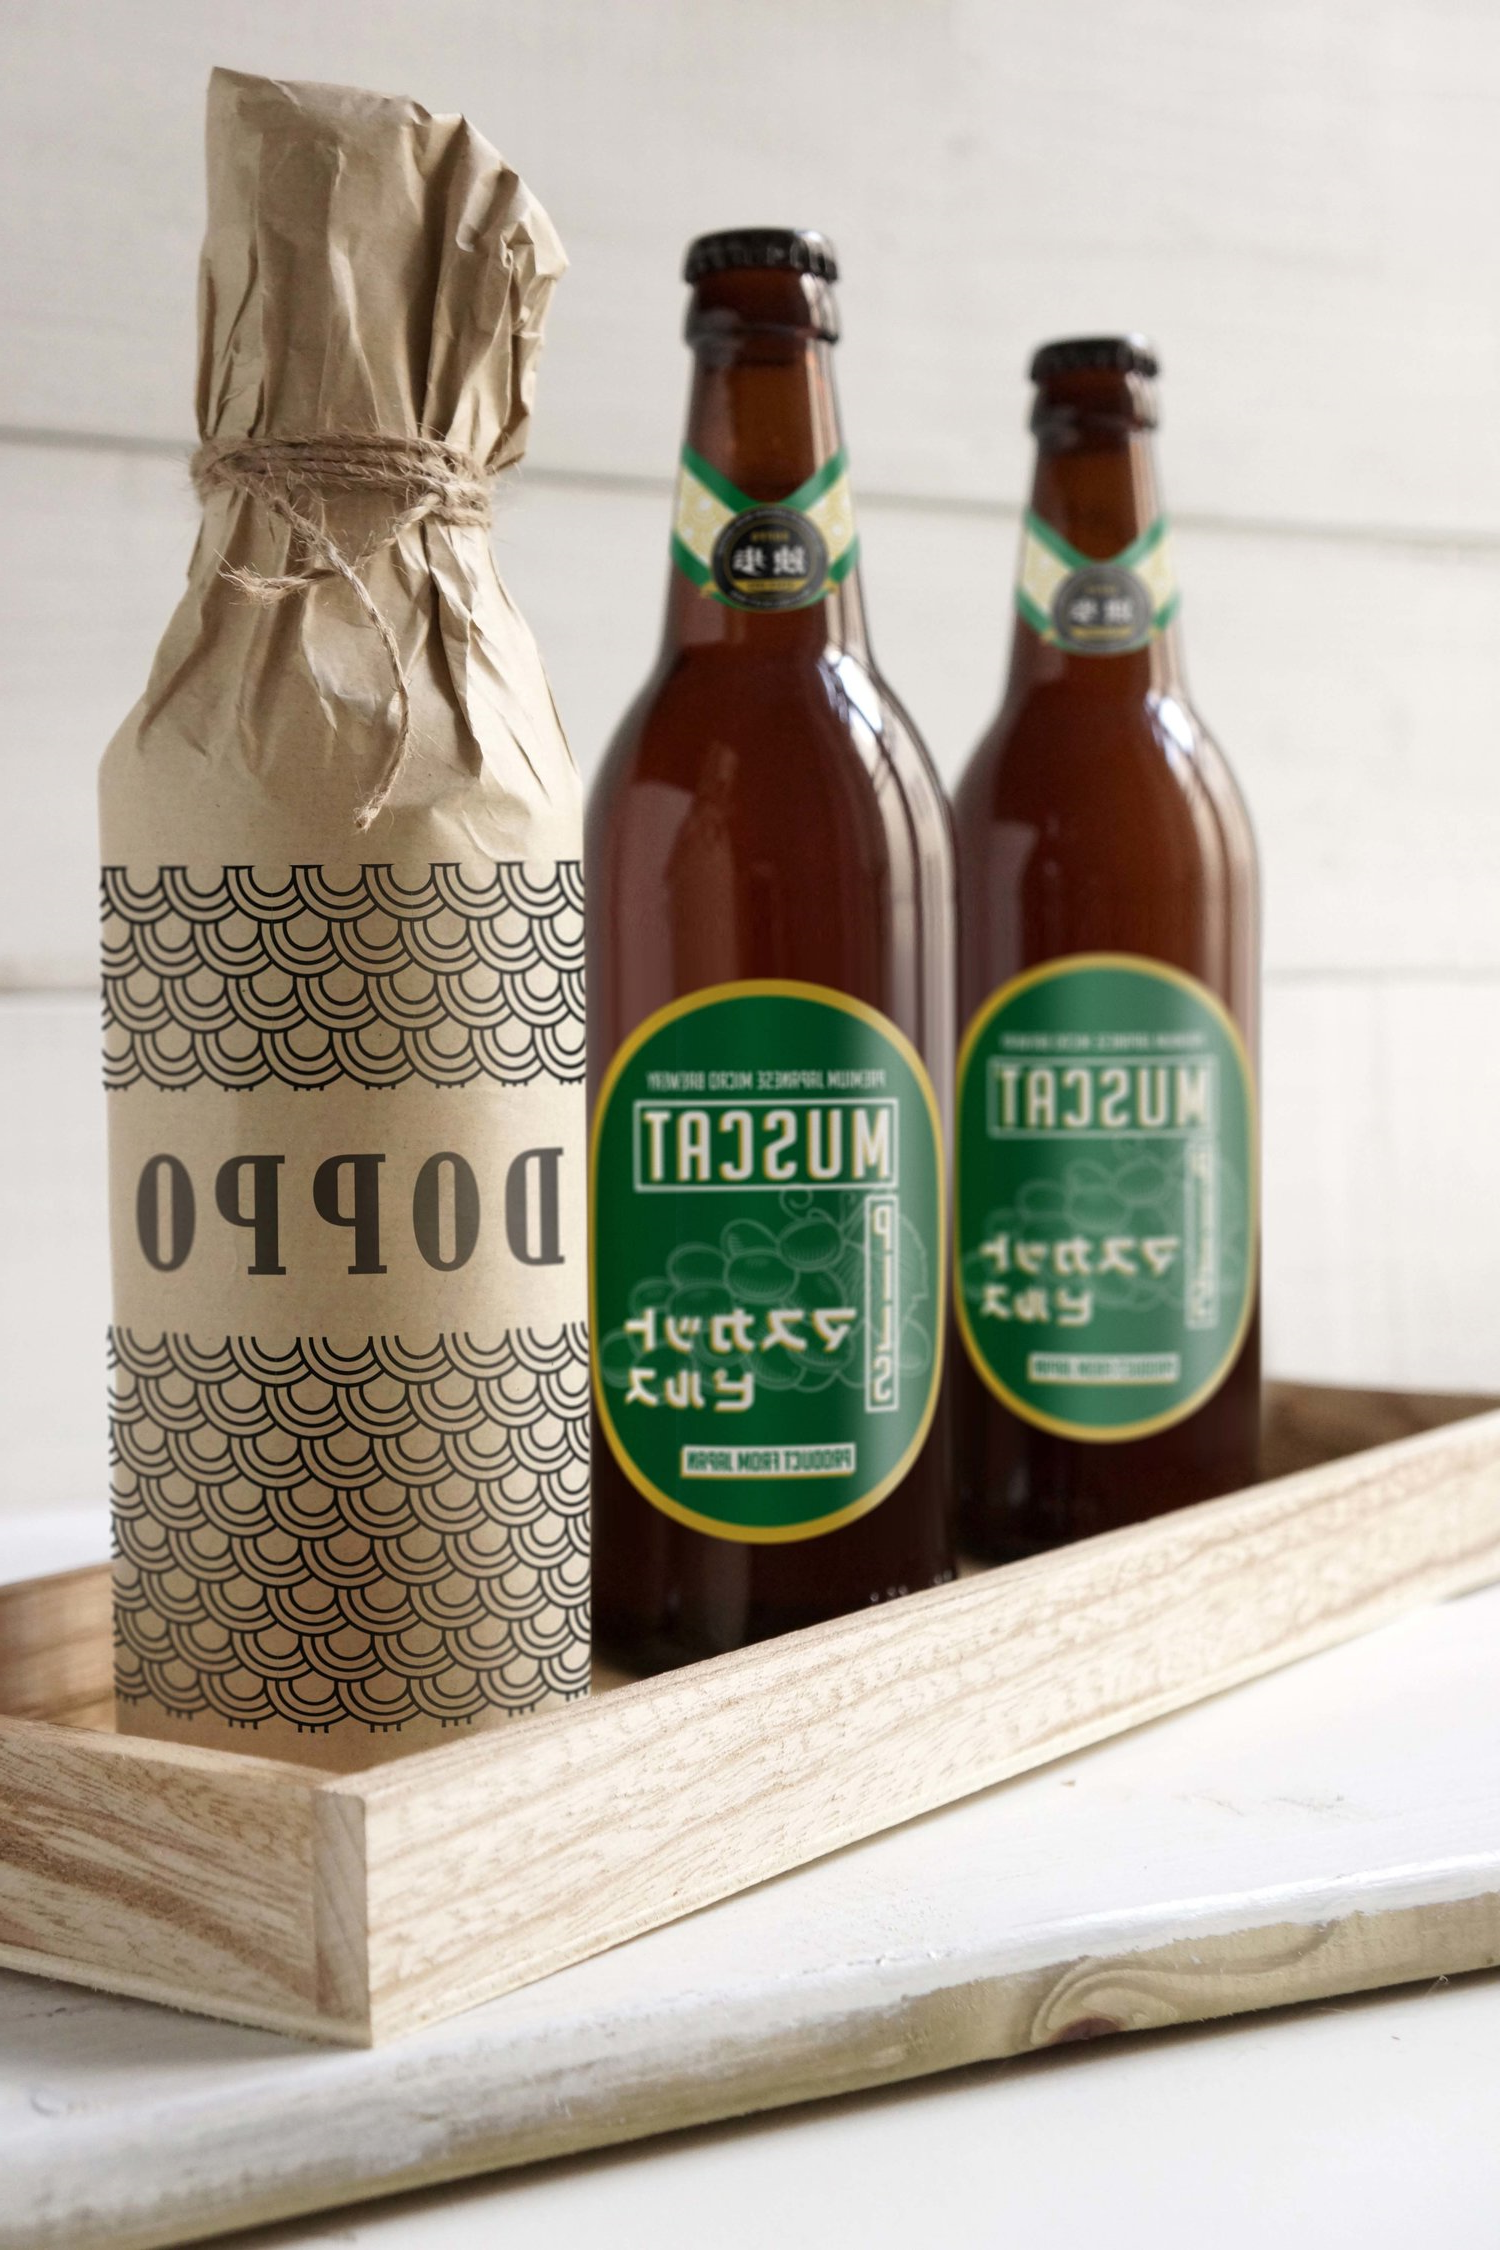 来自日本冈山的Doppo啤酒的包装设计(图2)